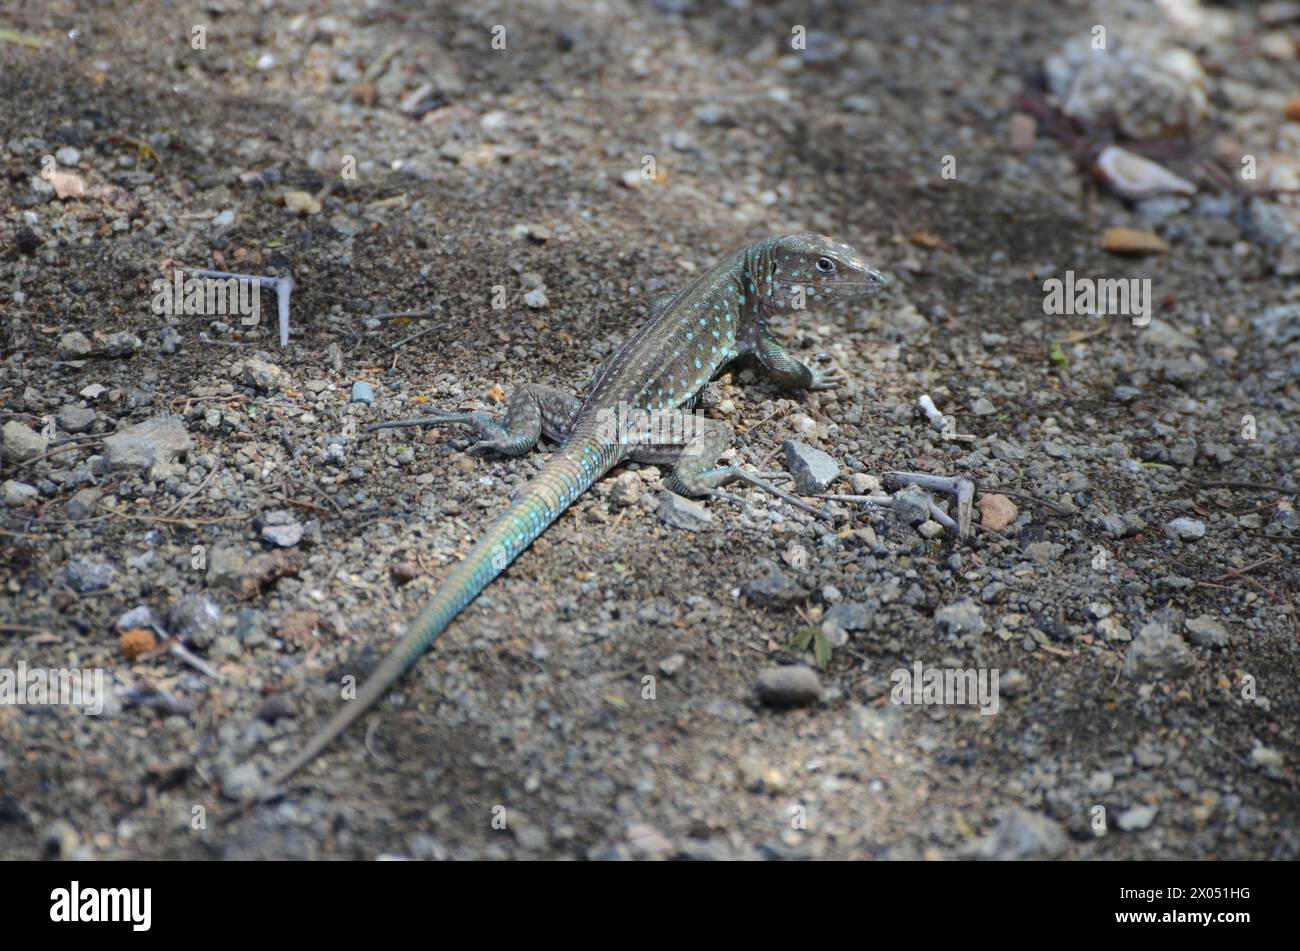 Un lagarto está tendido en el suelo en una zona rocosa. El lagarto es de color azul y verde Foto de stock